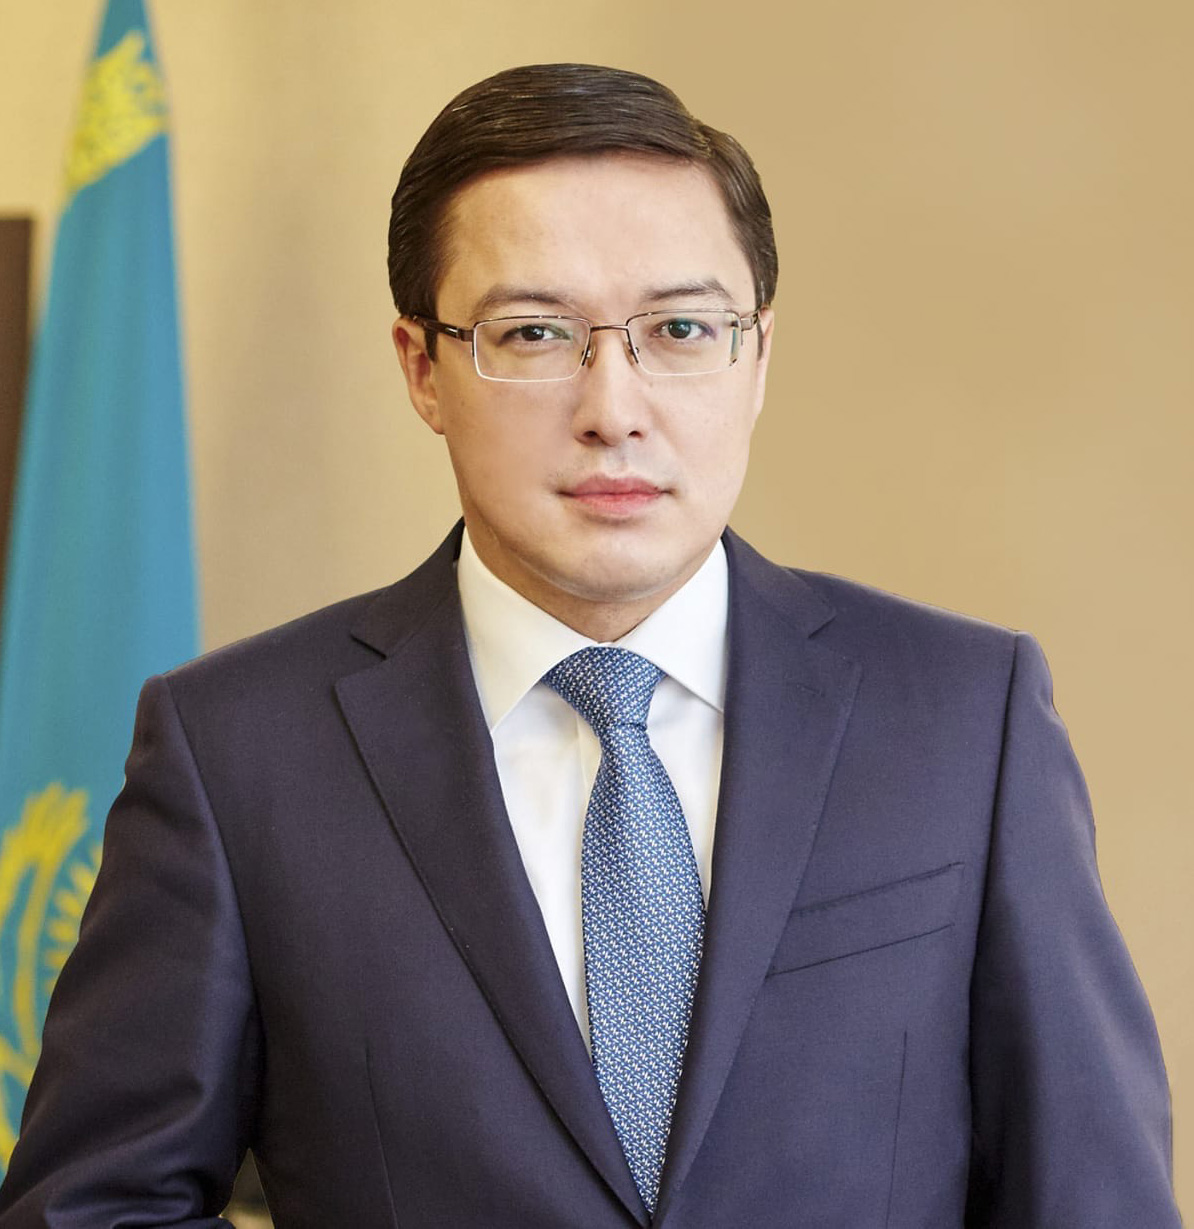 Speaker Данияр Акишев